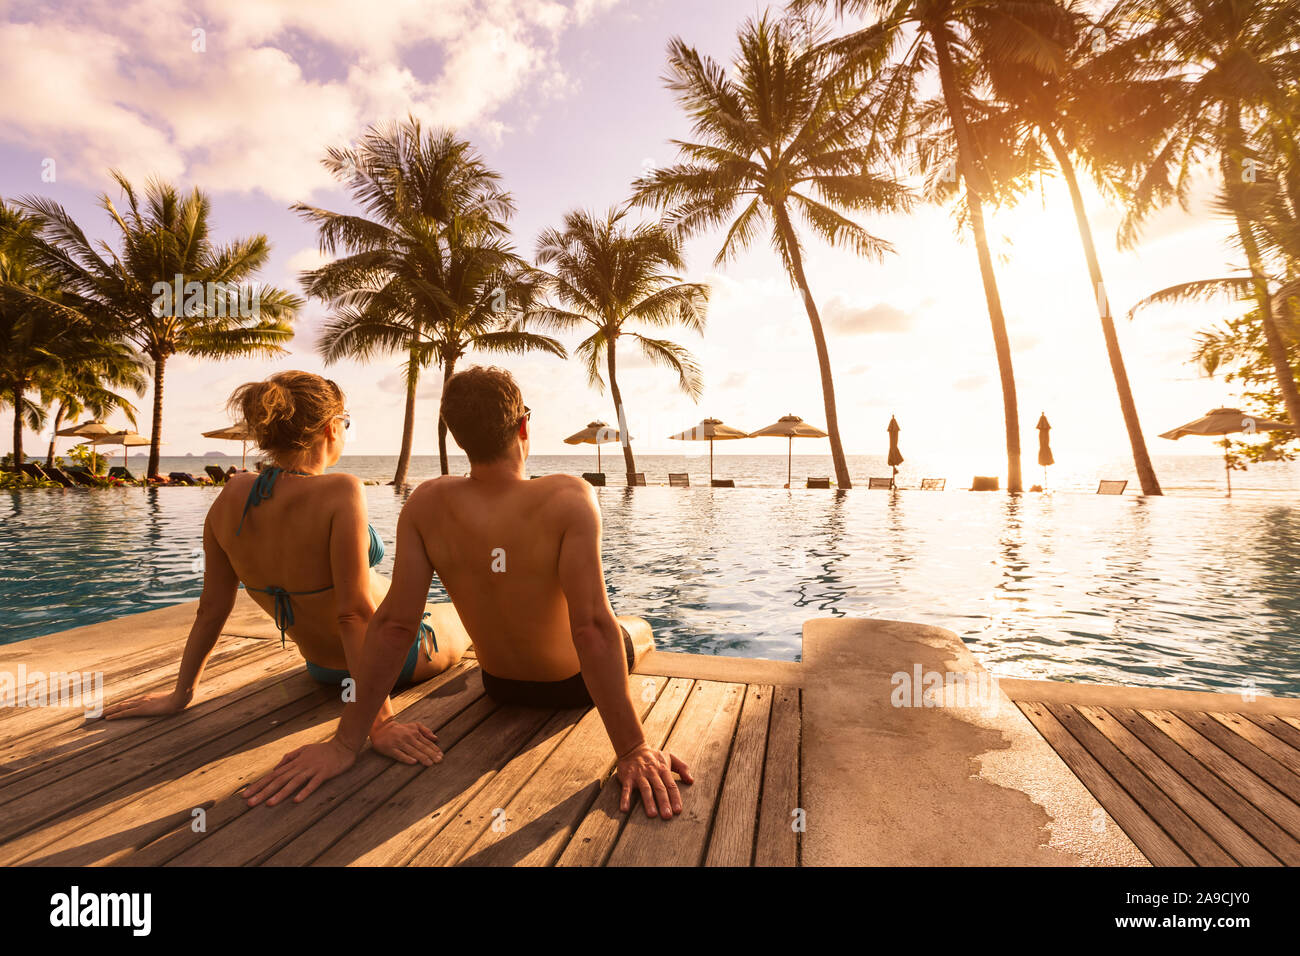 Giovane godendo spiaggia vacanza vacanze al resort tropicale con piscina e palme di cocco vicino alla costa con bellissimo panorama al tramonto Foto Stock